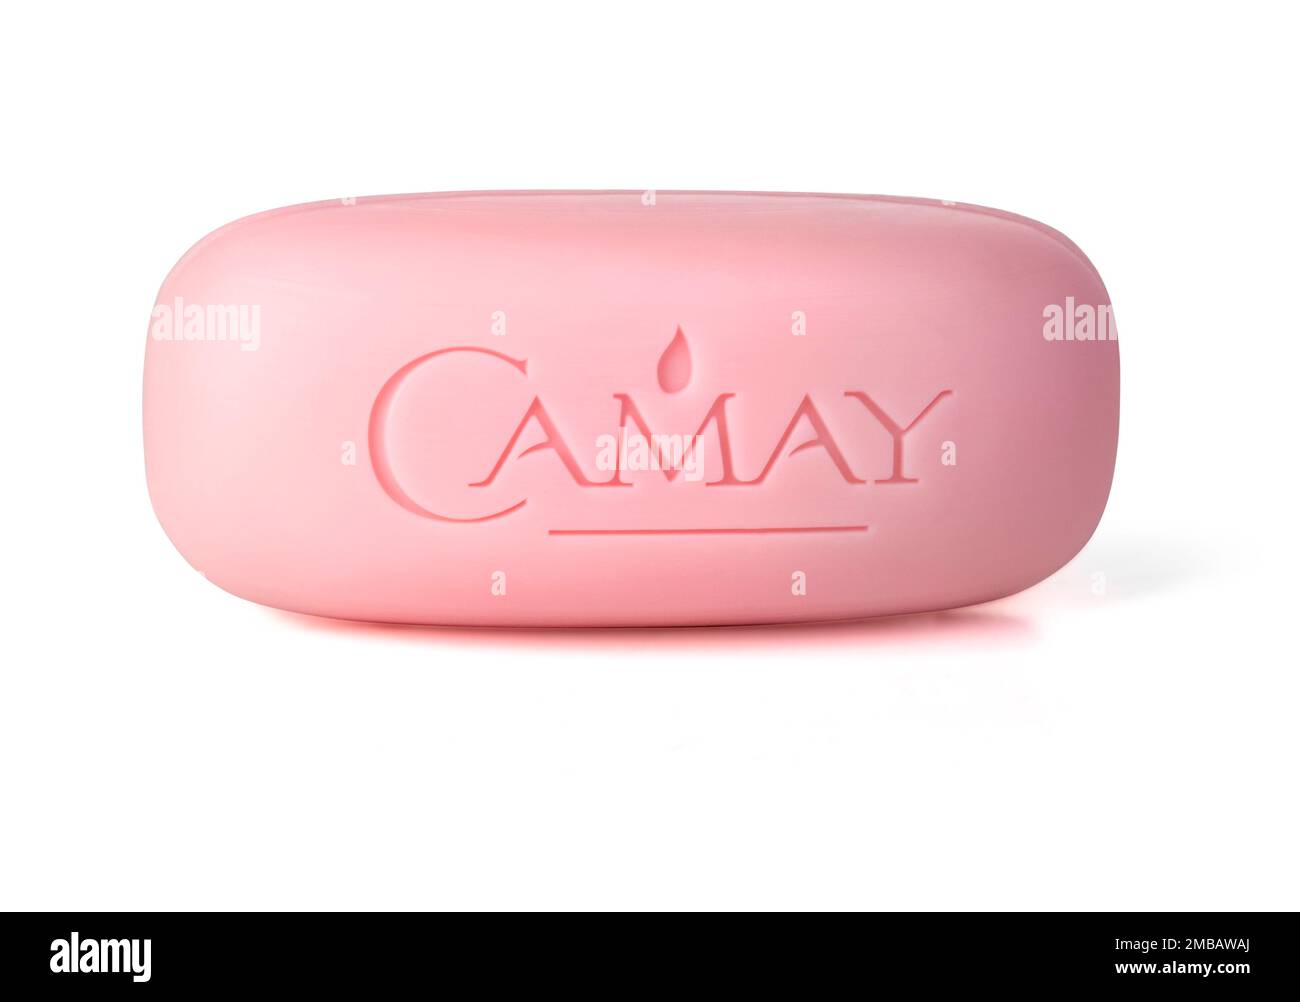 Camay immagini e fotografie stock ad alta risoluzione - Alamy